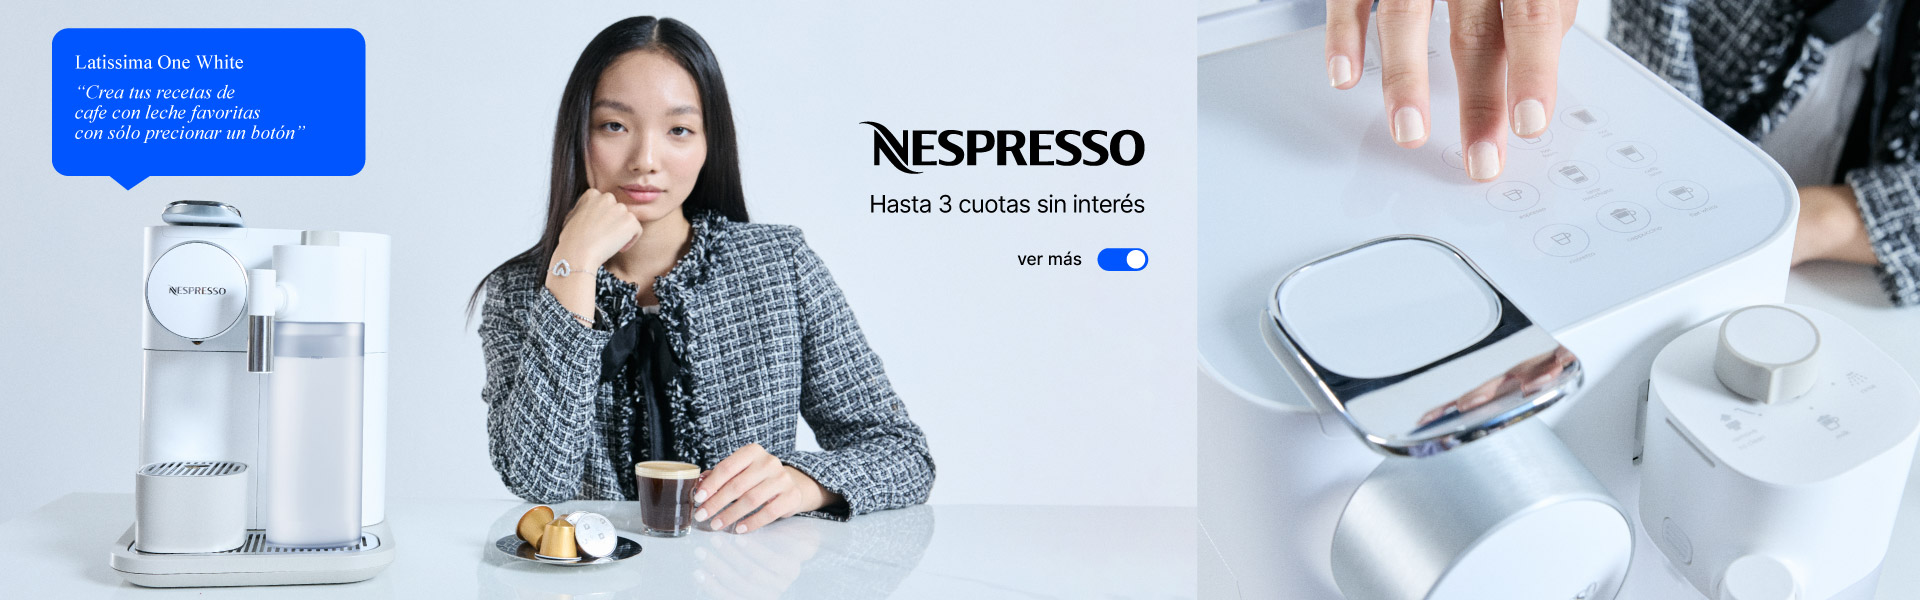 Encontrá las cafeteras Nespresso en hasta 3 cuotas sin interés